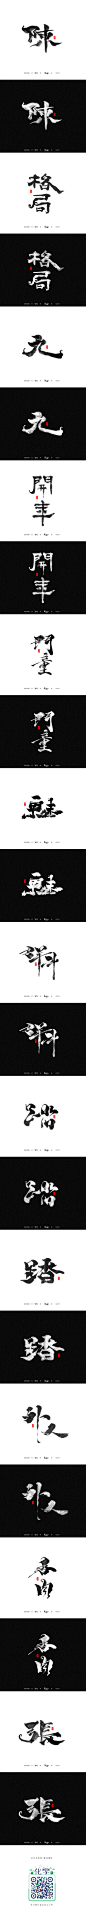 化龙 字逍遥-字体传奇网-中国首个字体品牌设计师交流网